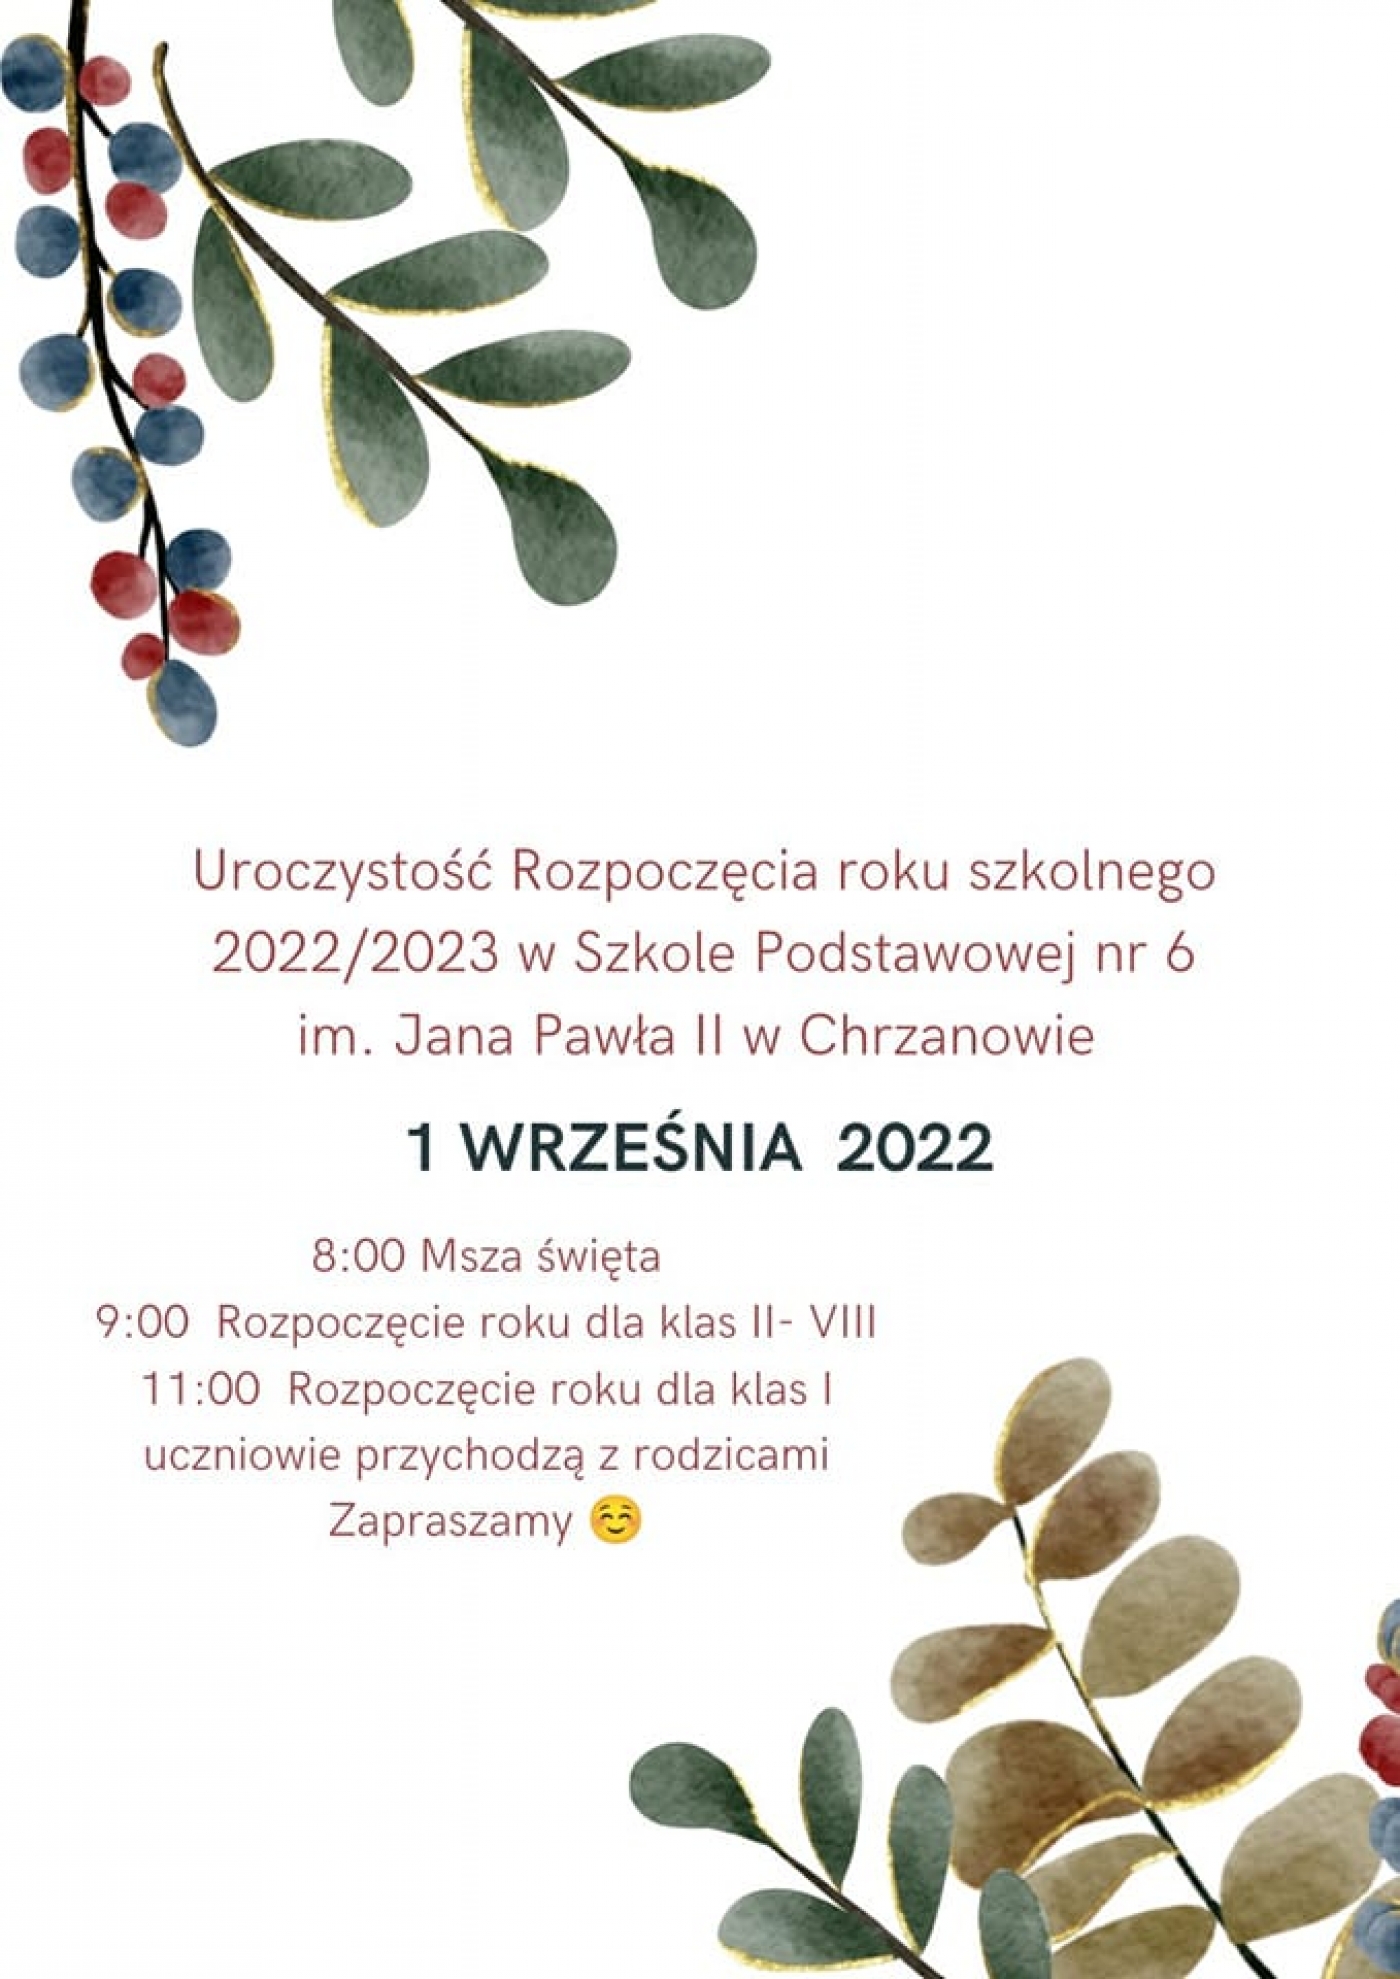 Uroczystość Rozpoczęcia roku szkolnego 2022/2023